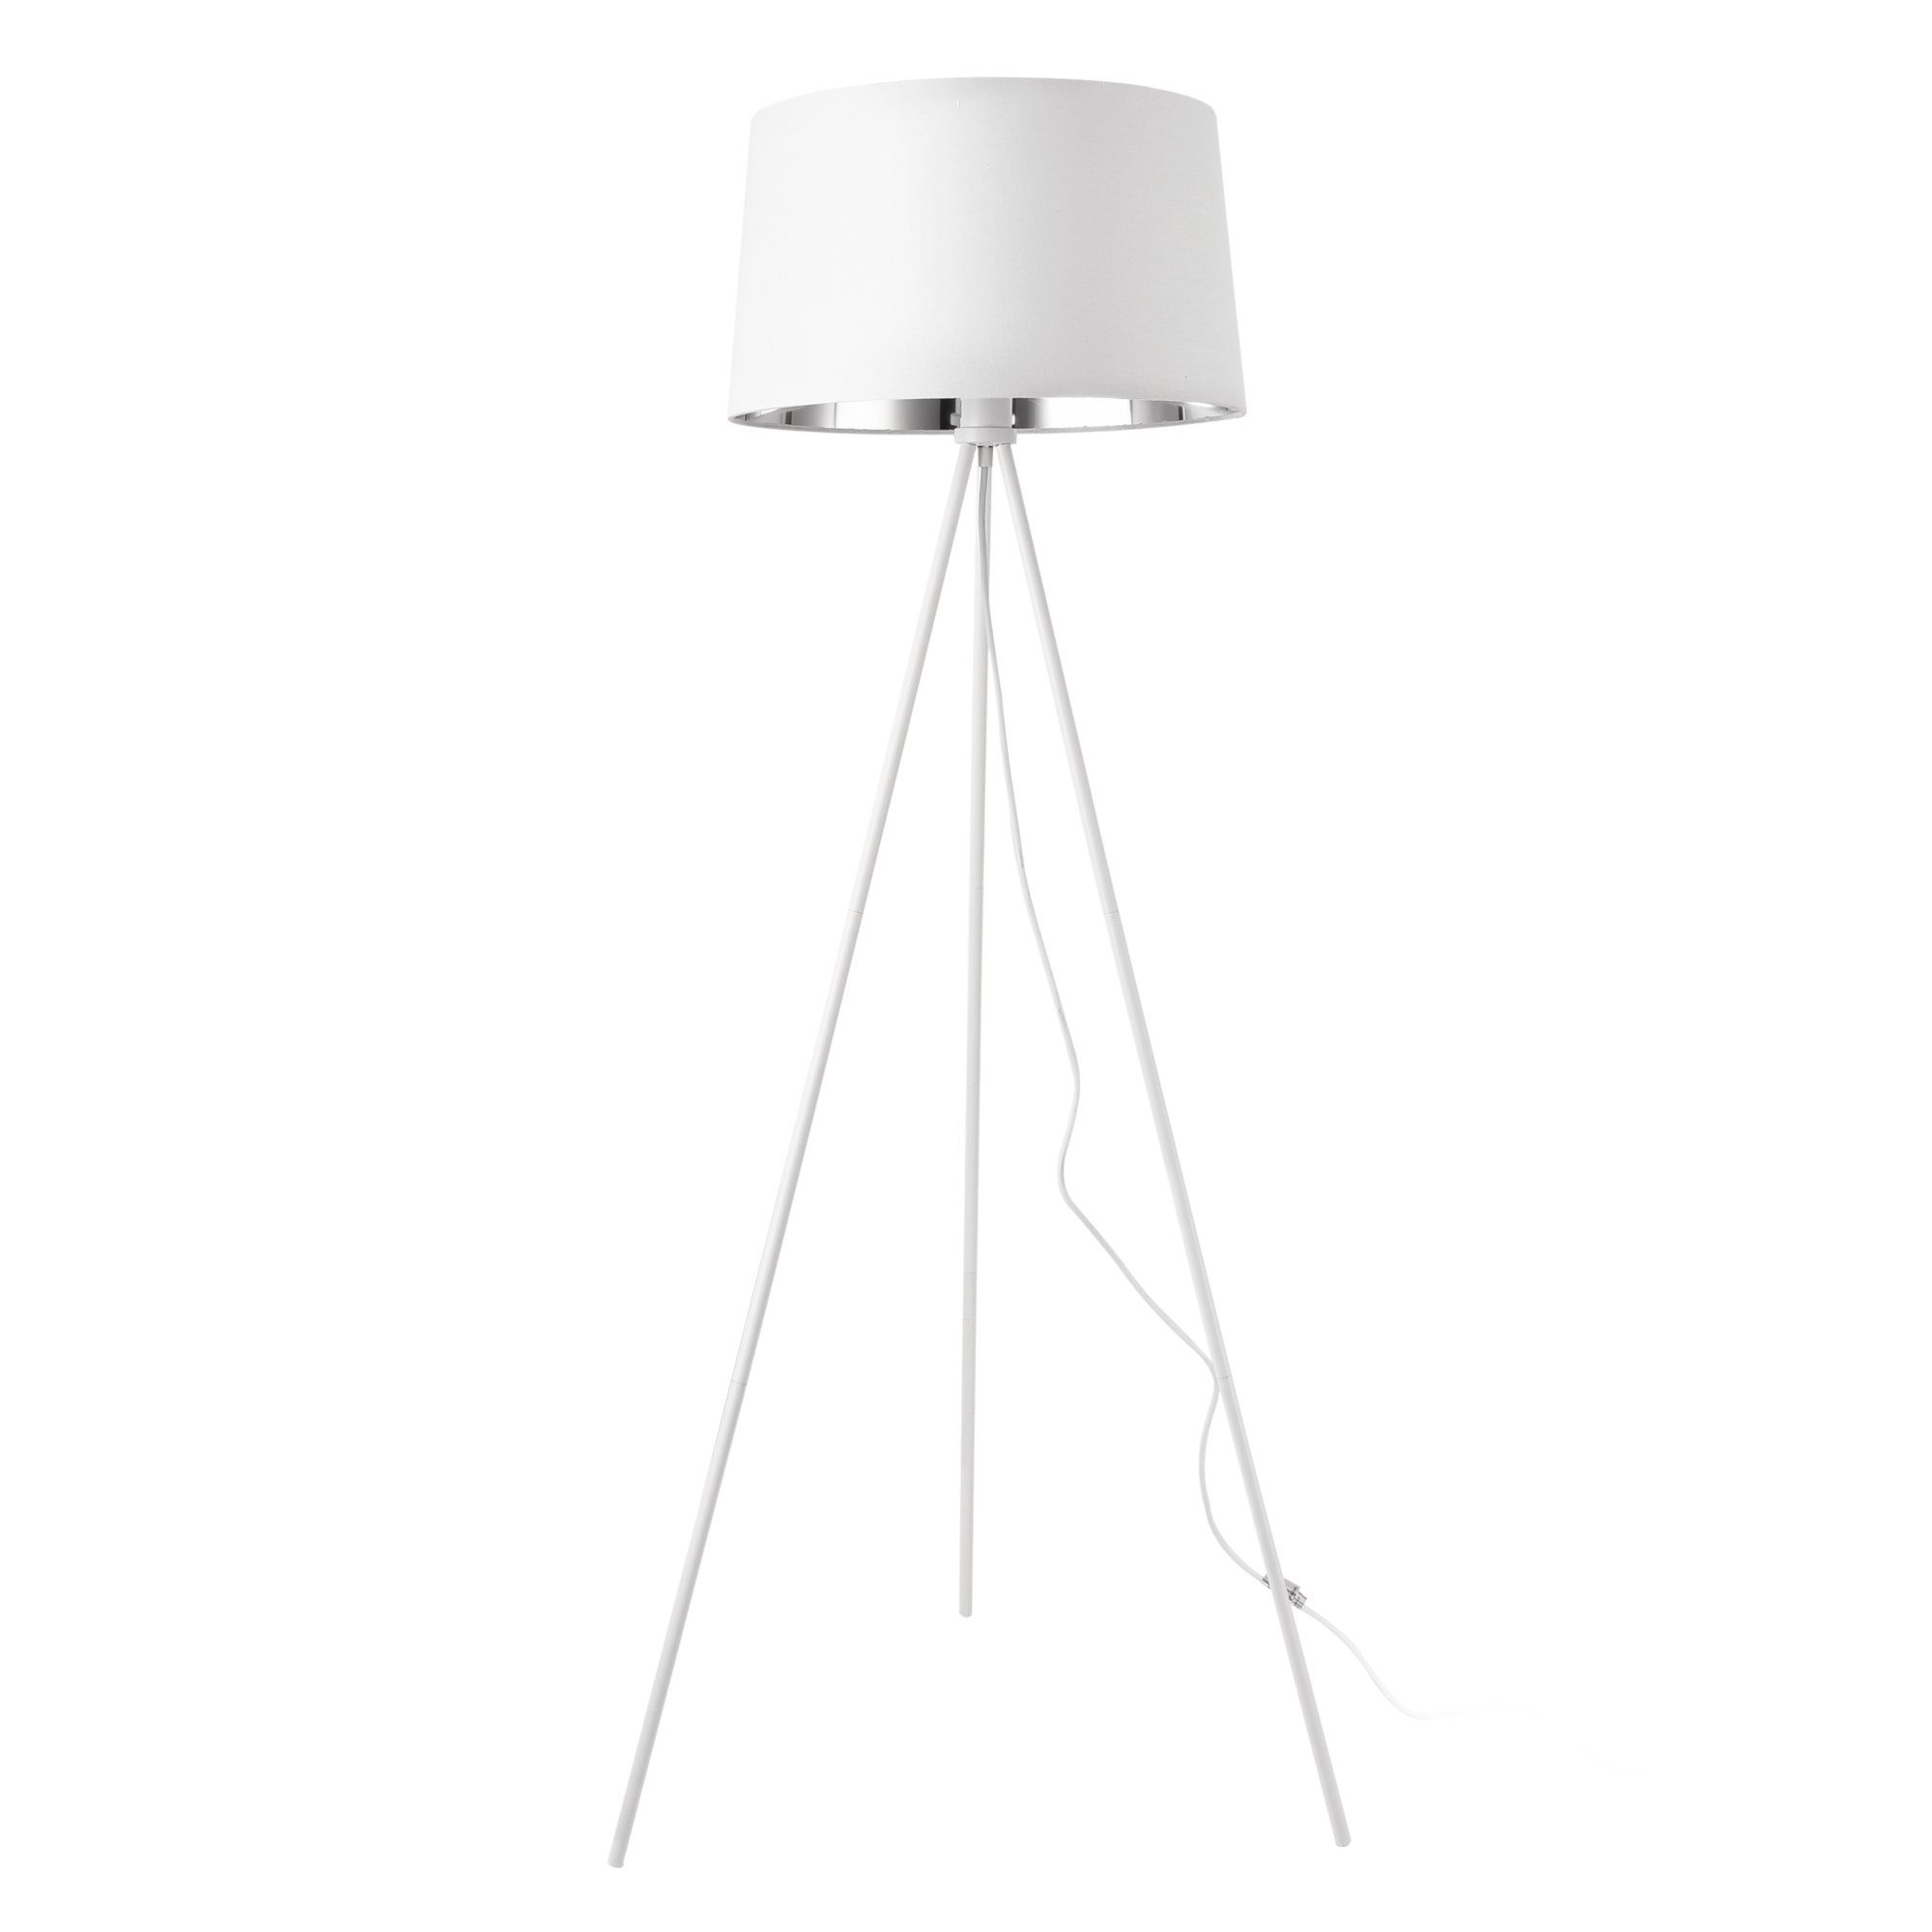 ohne Leuchtmittel, weiß »Manchester« Metall Lampe Design Stehleuchte Stehlampe, lux.pro